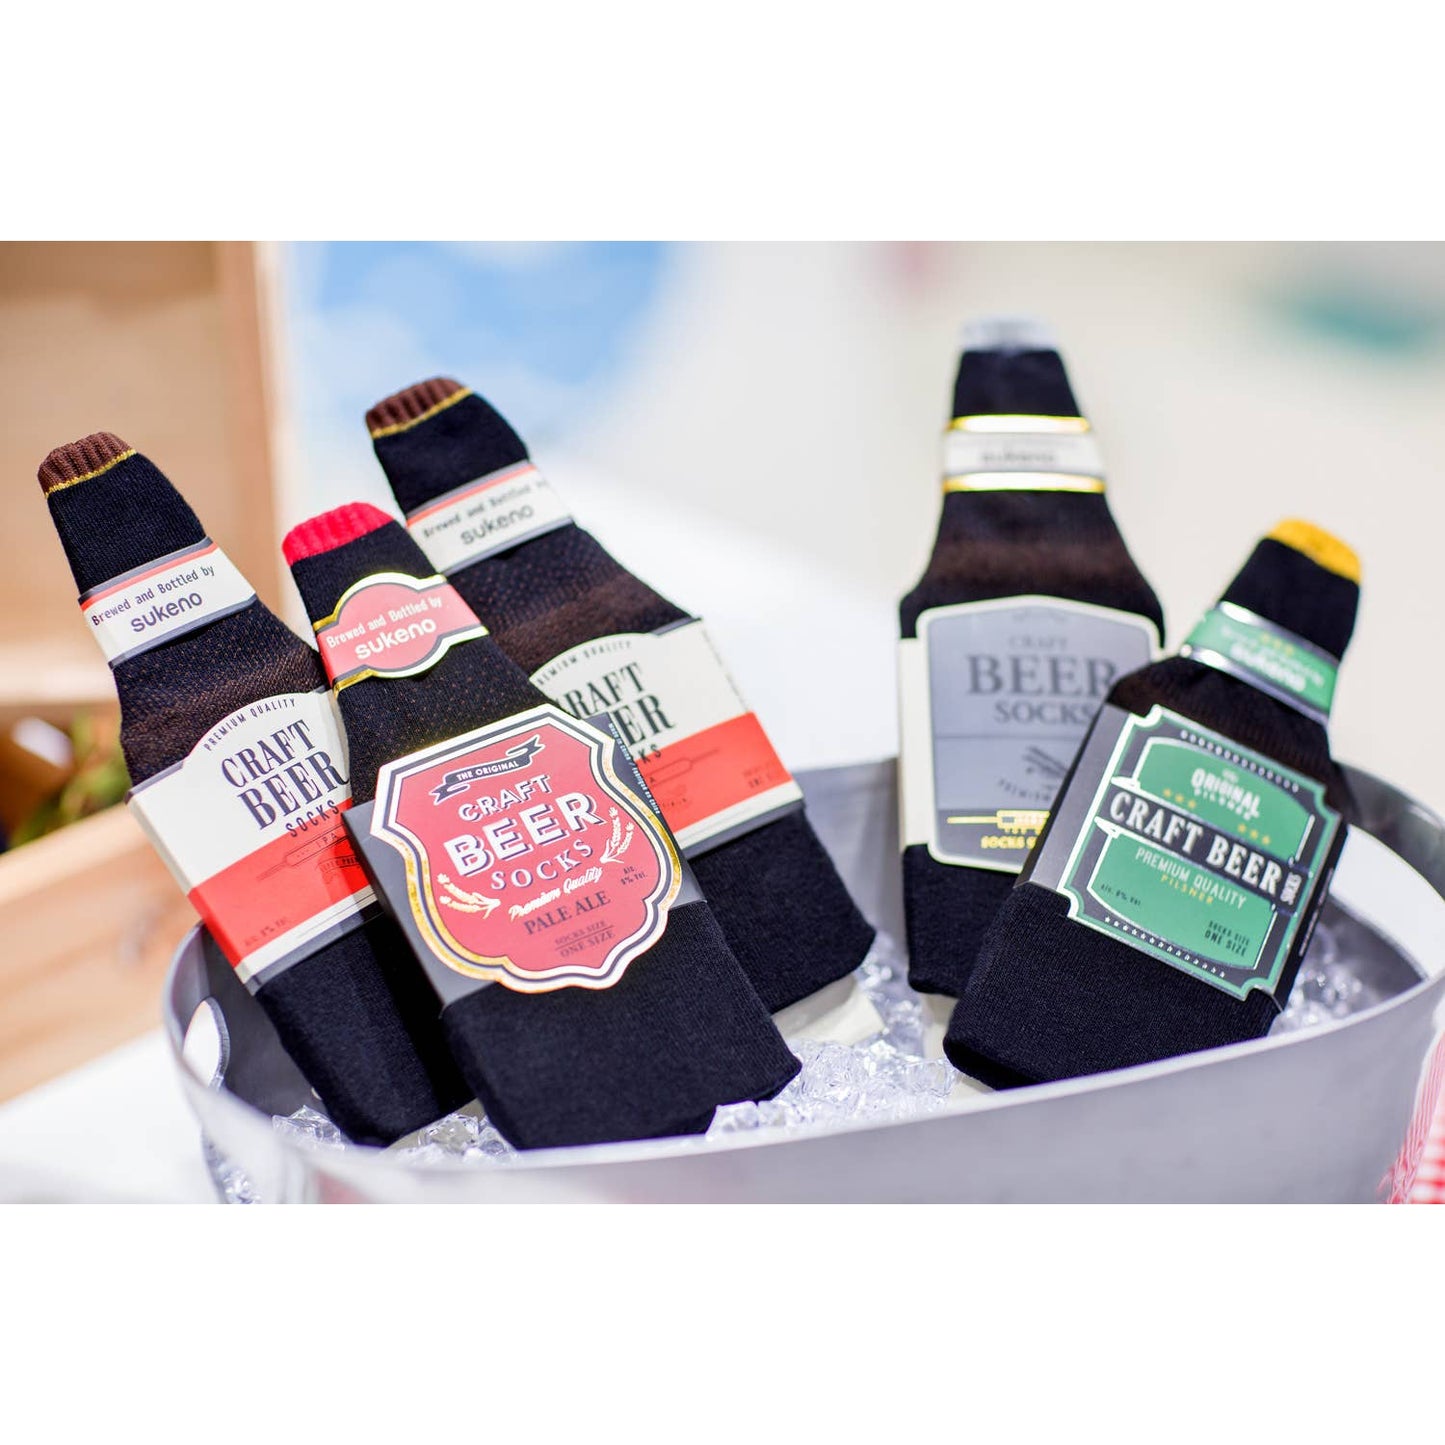 Pale Ale Beer Socks | Funny Socks Folded Together Like Beer for Gifting